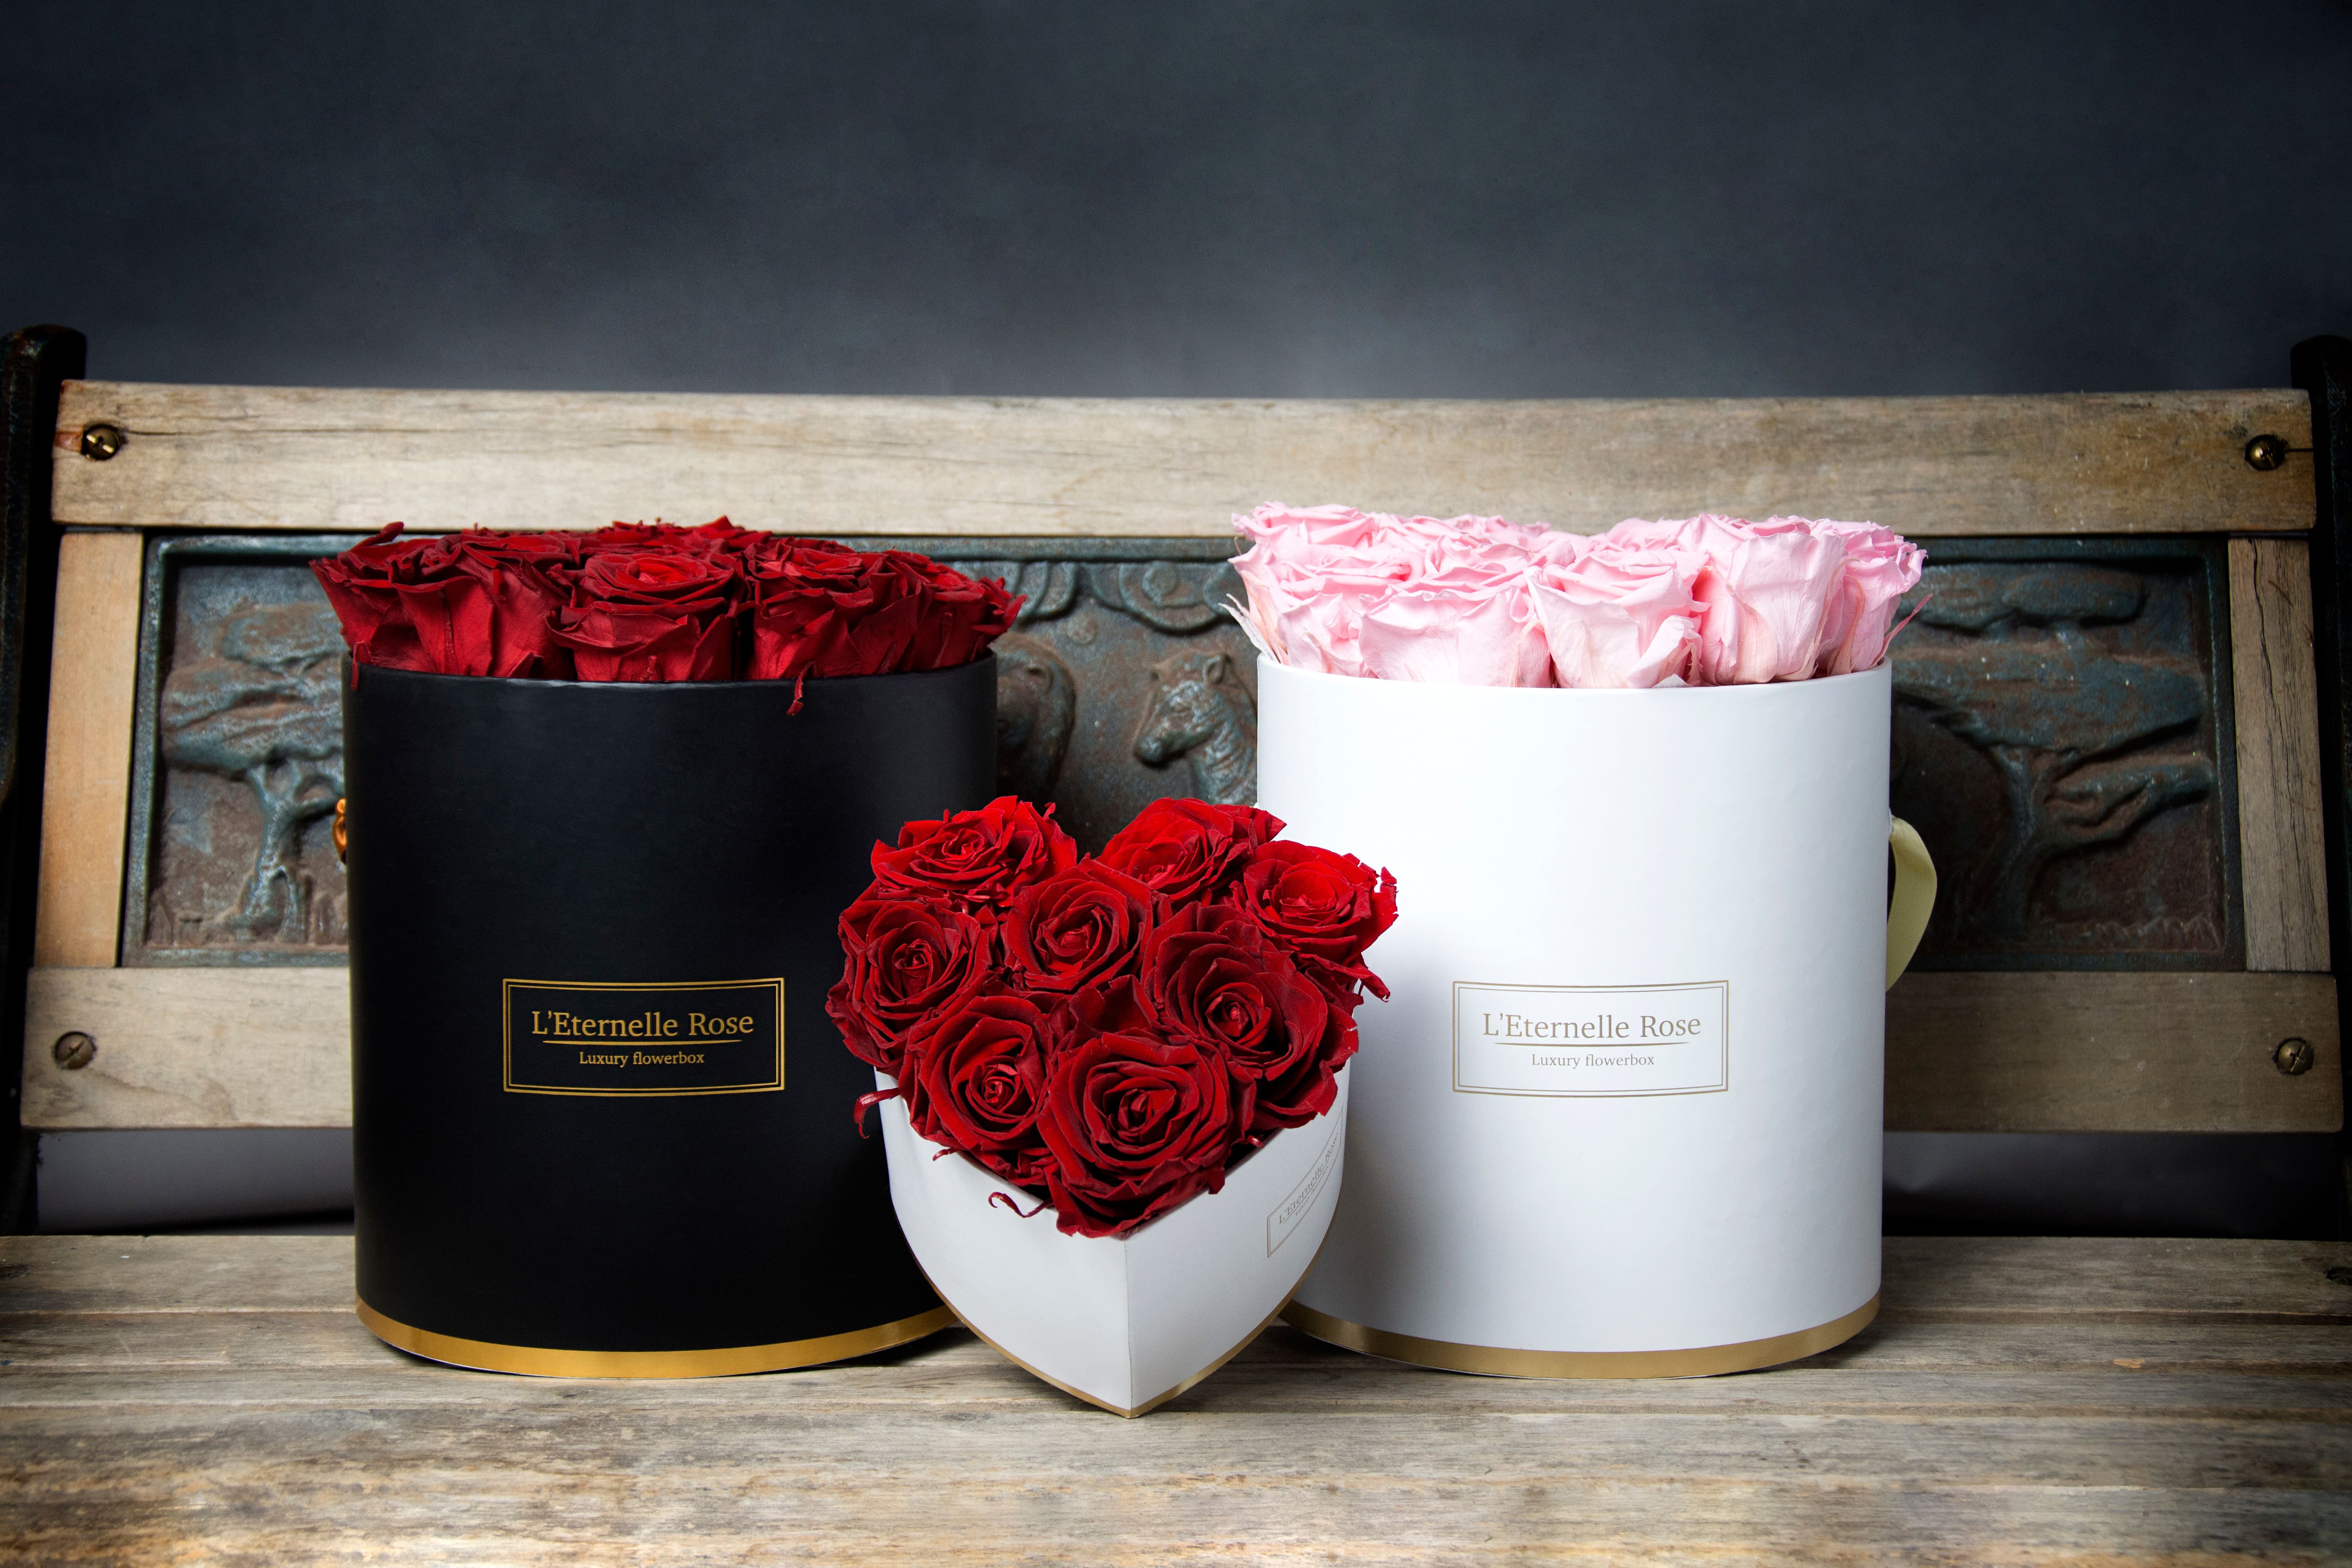 L'Eternelle Rose - Rose éternelle et flowerbox